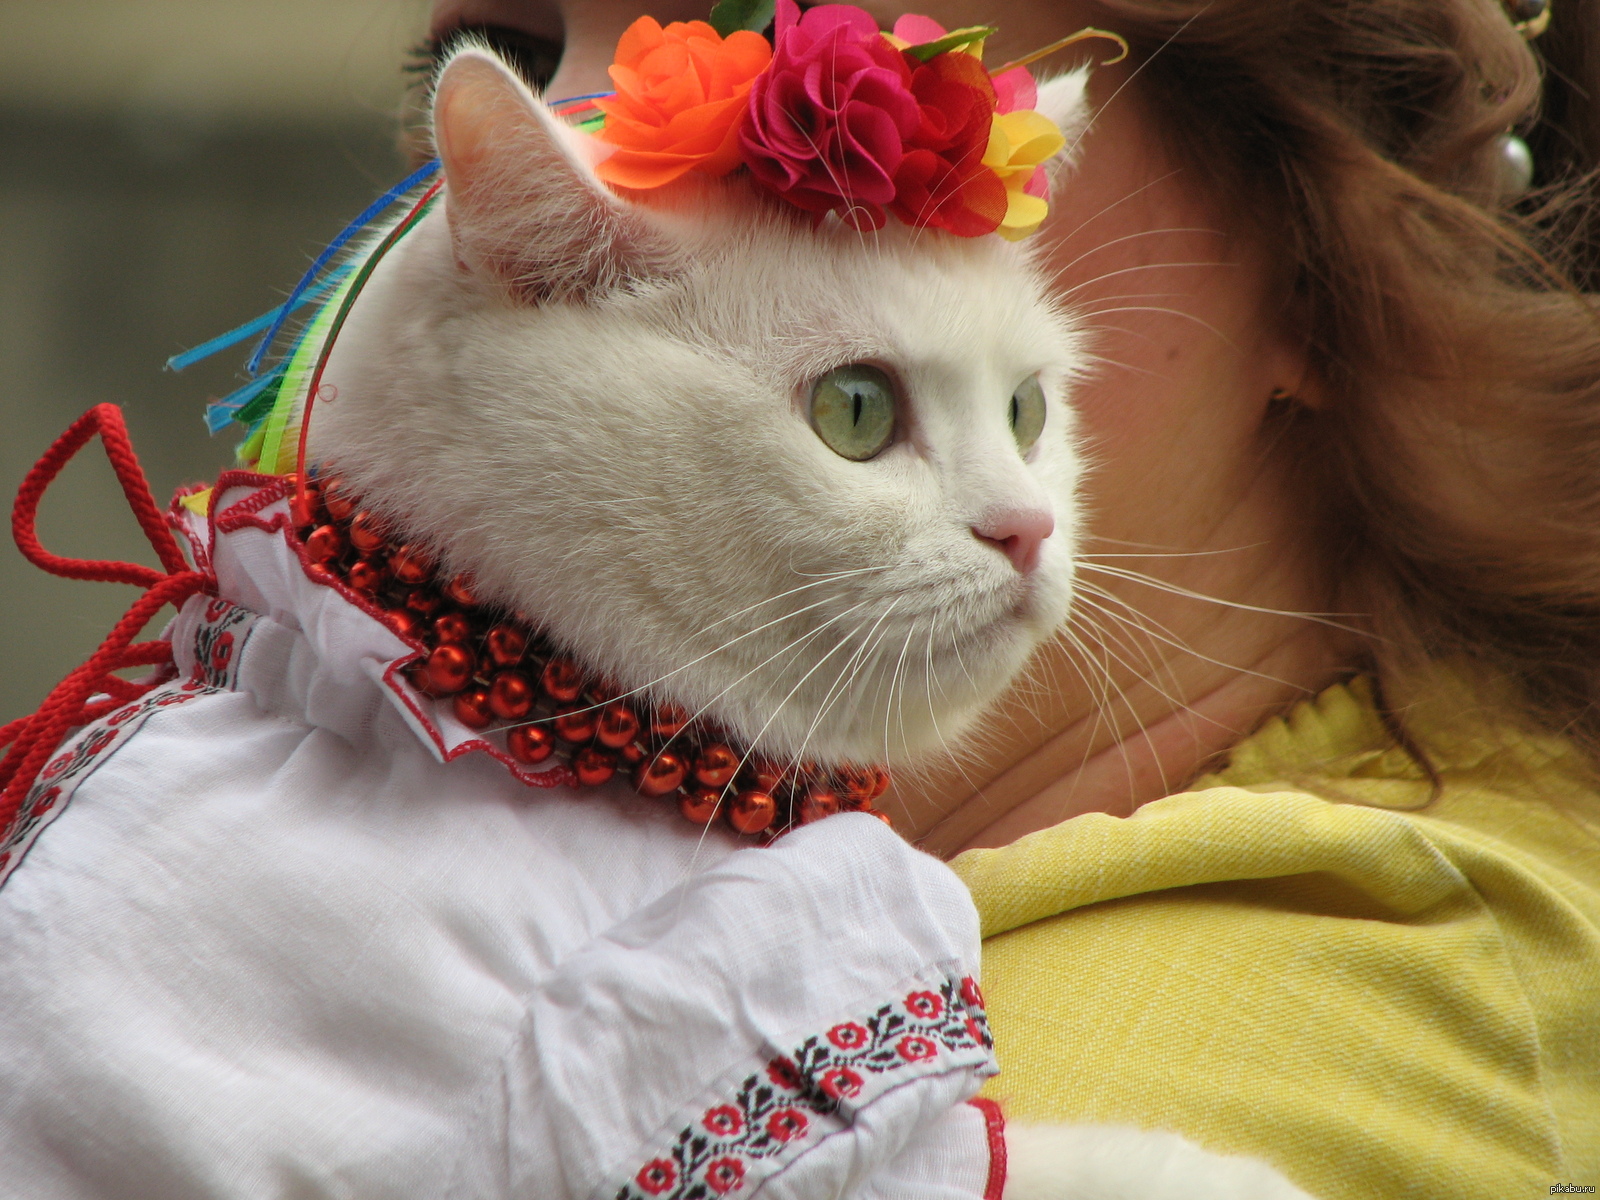 Кот украинец. Кошка в вышиванке. Украинский кот. Котики в украинской вышиванке.